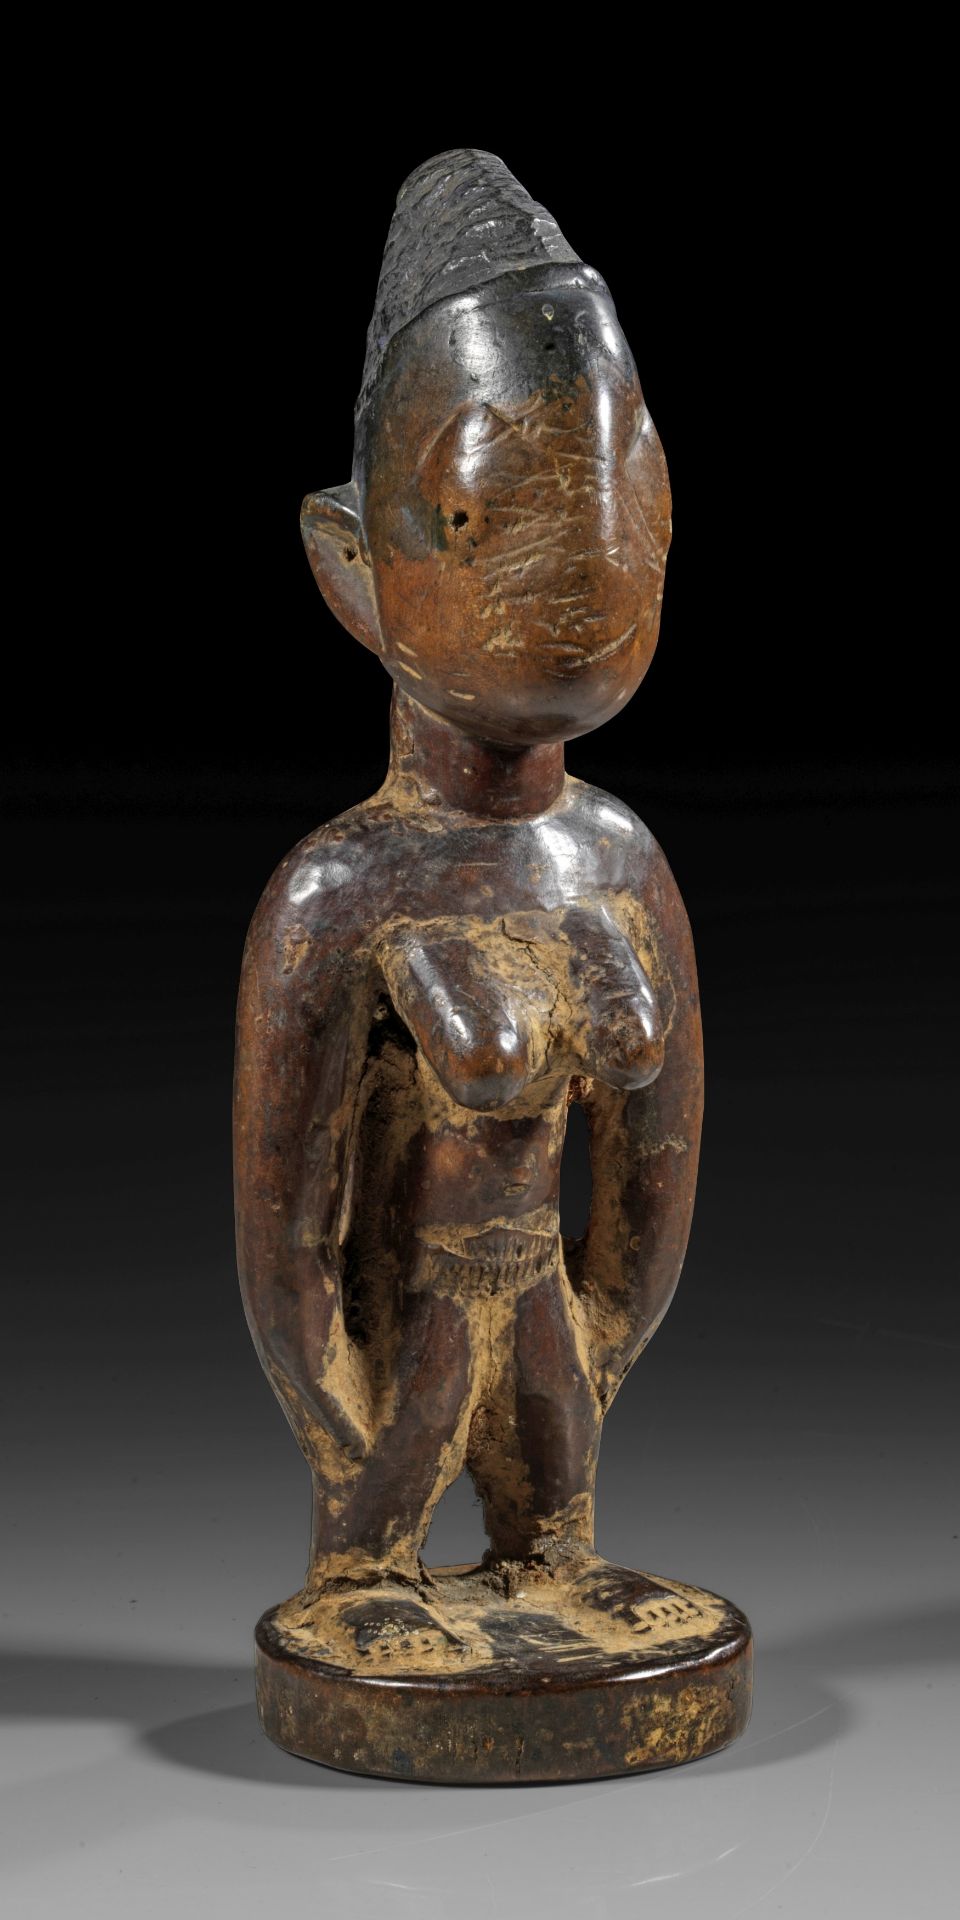 Yoruba, Nigeria, female twin figure ibedji.